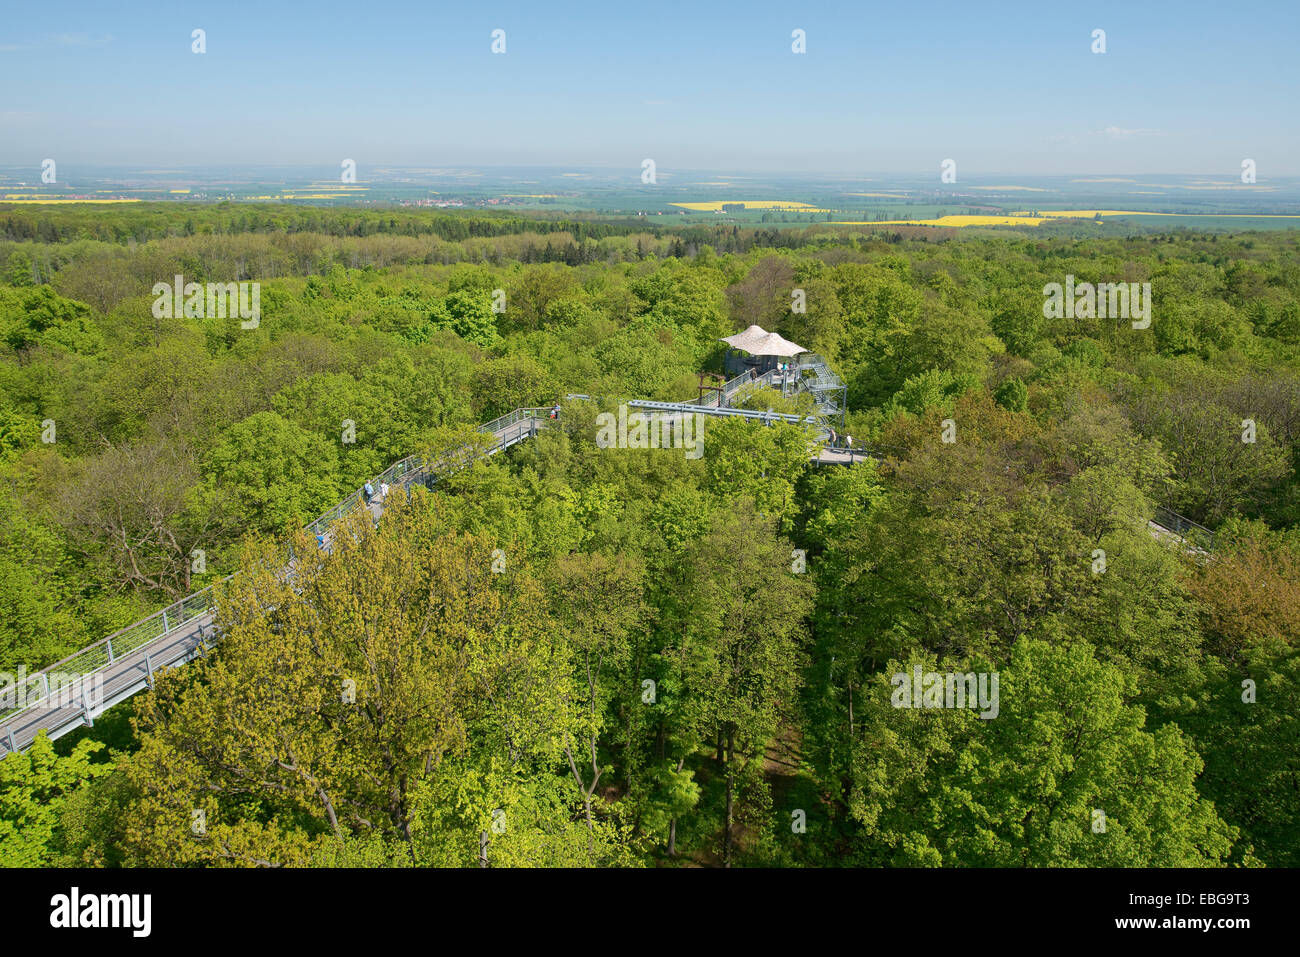 Baumkronenpfad oder Canopy Walk Weg im Frühjahr Wald, Nationalpark Hainich, Thüringen, Deutschland Stockfoto